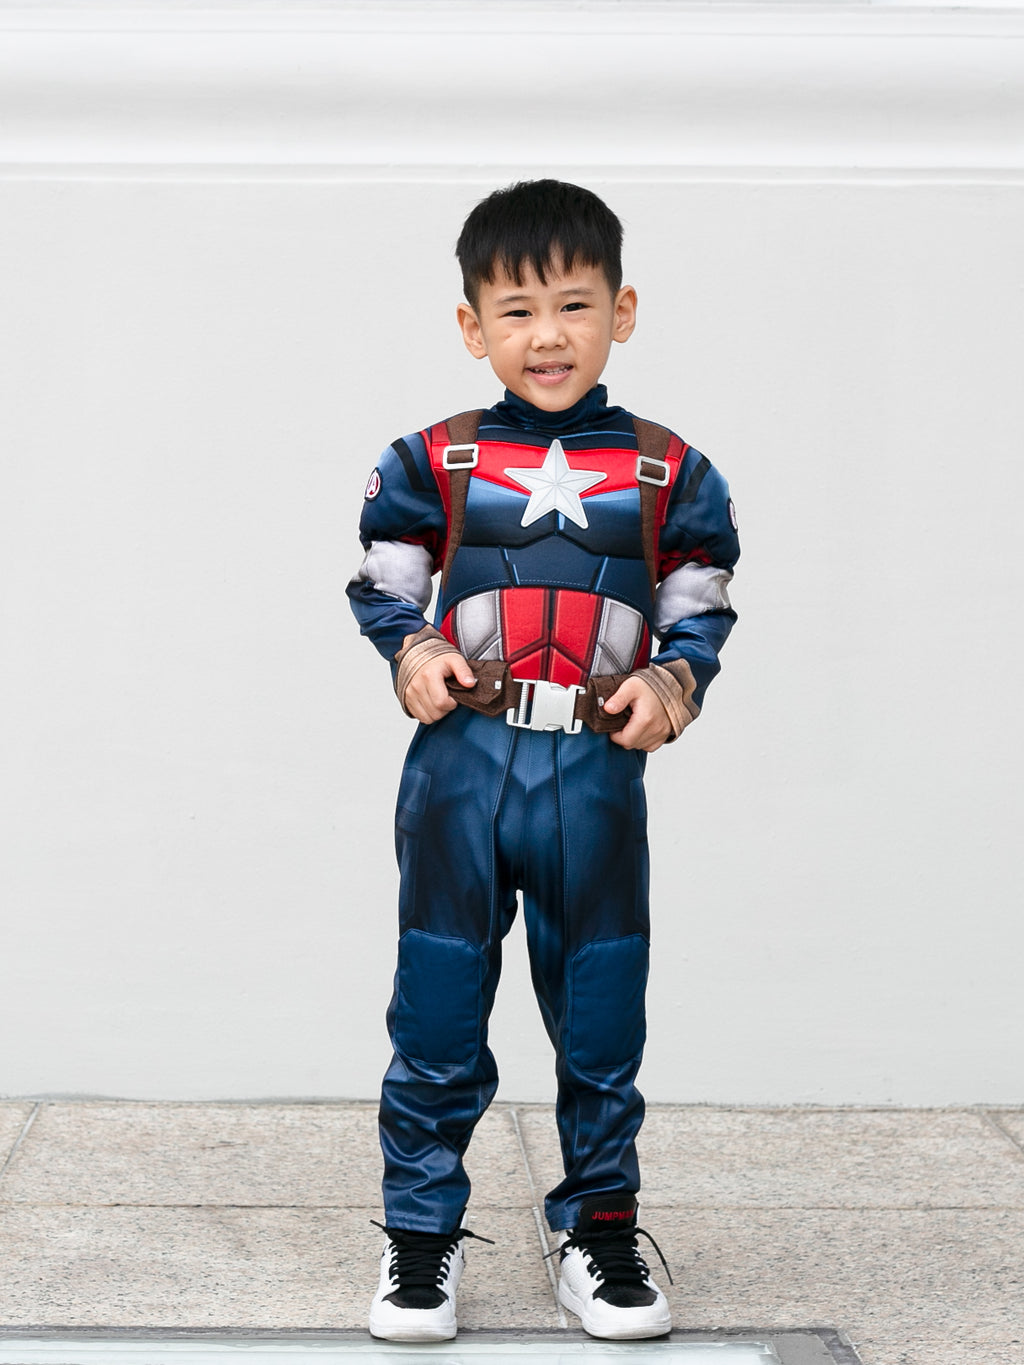 Captain America Superhero Costume